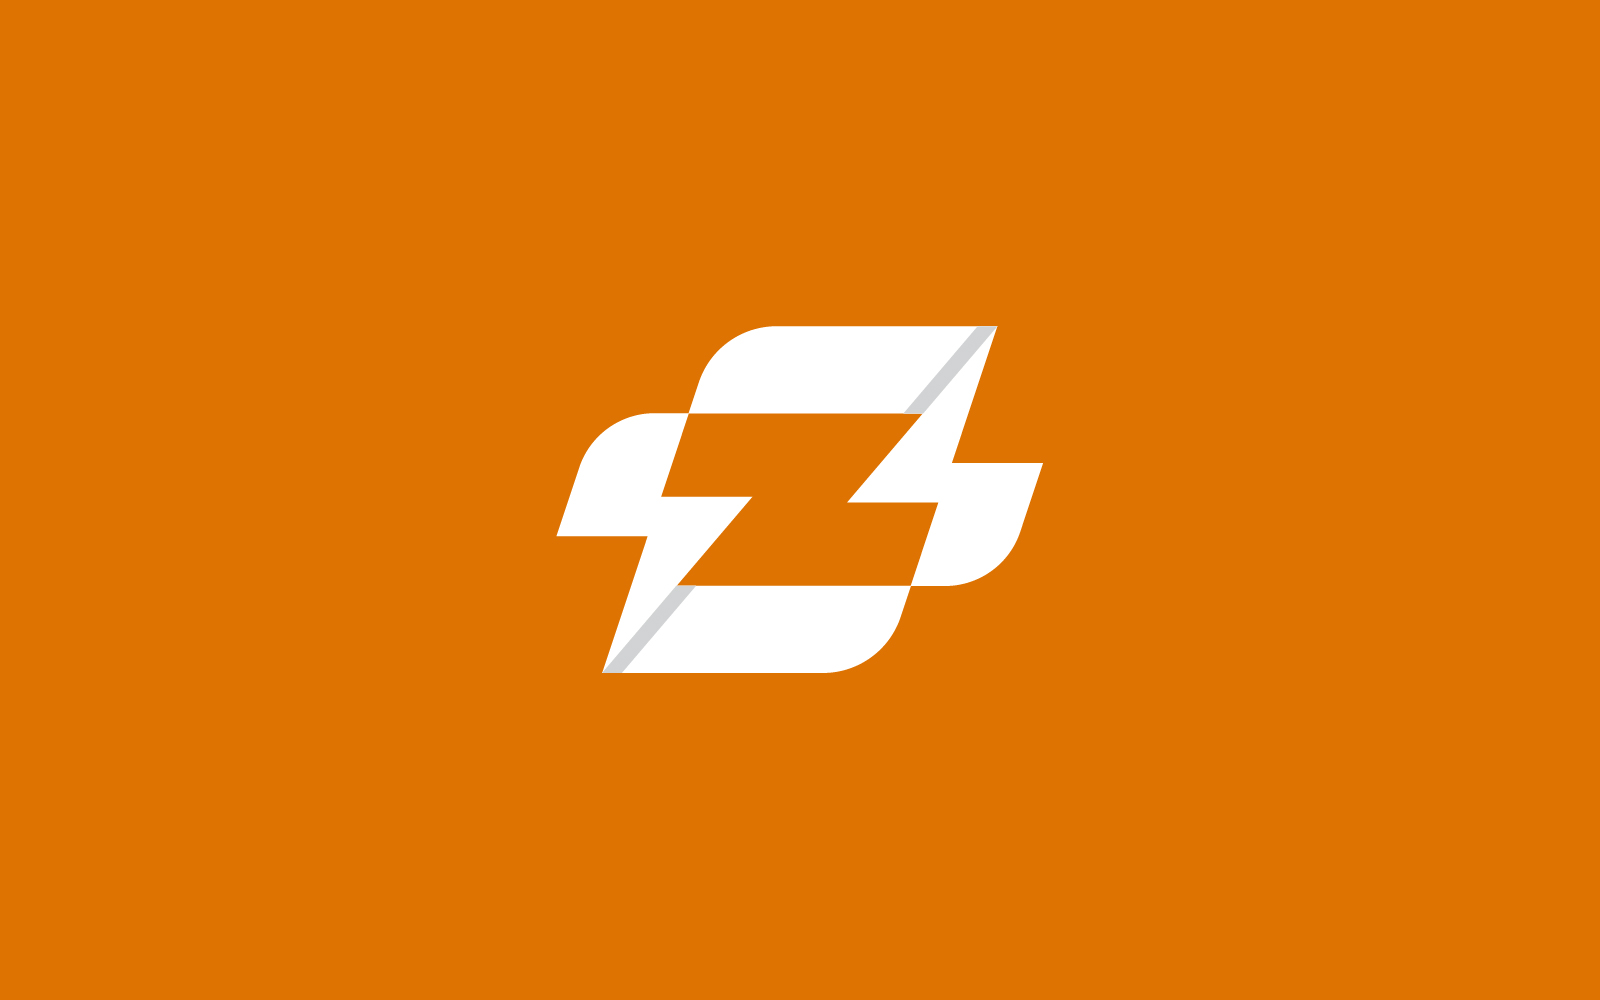 Letter Z Volt or voltage logo design template